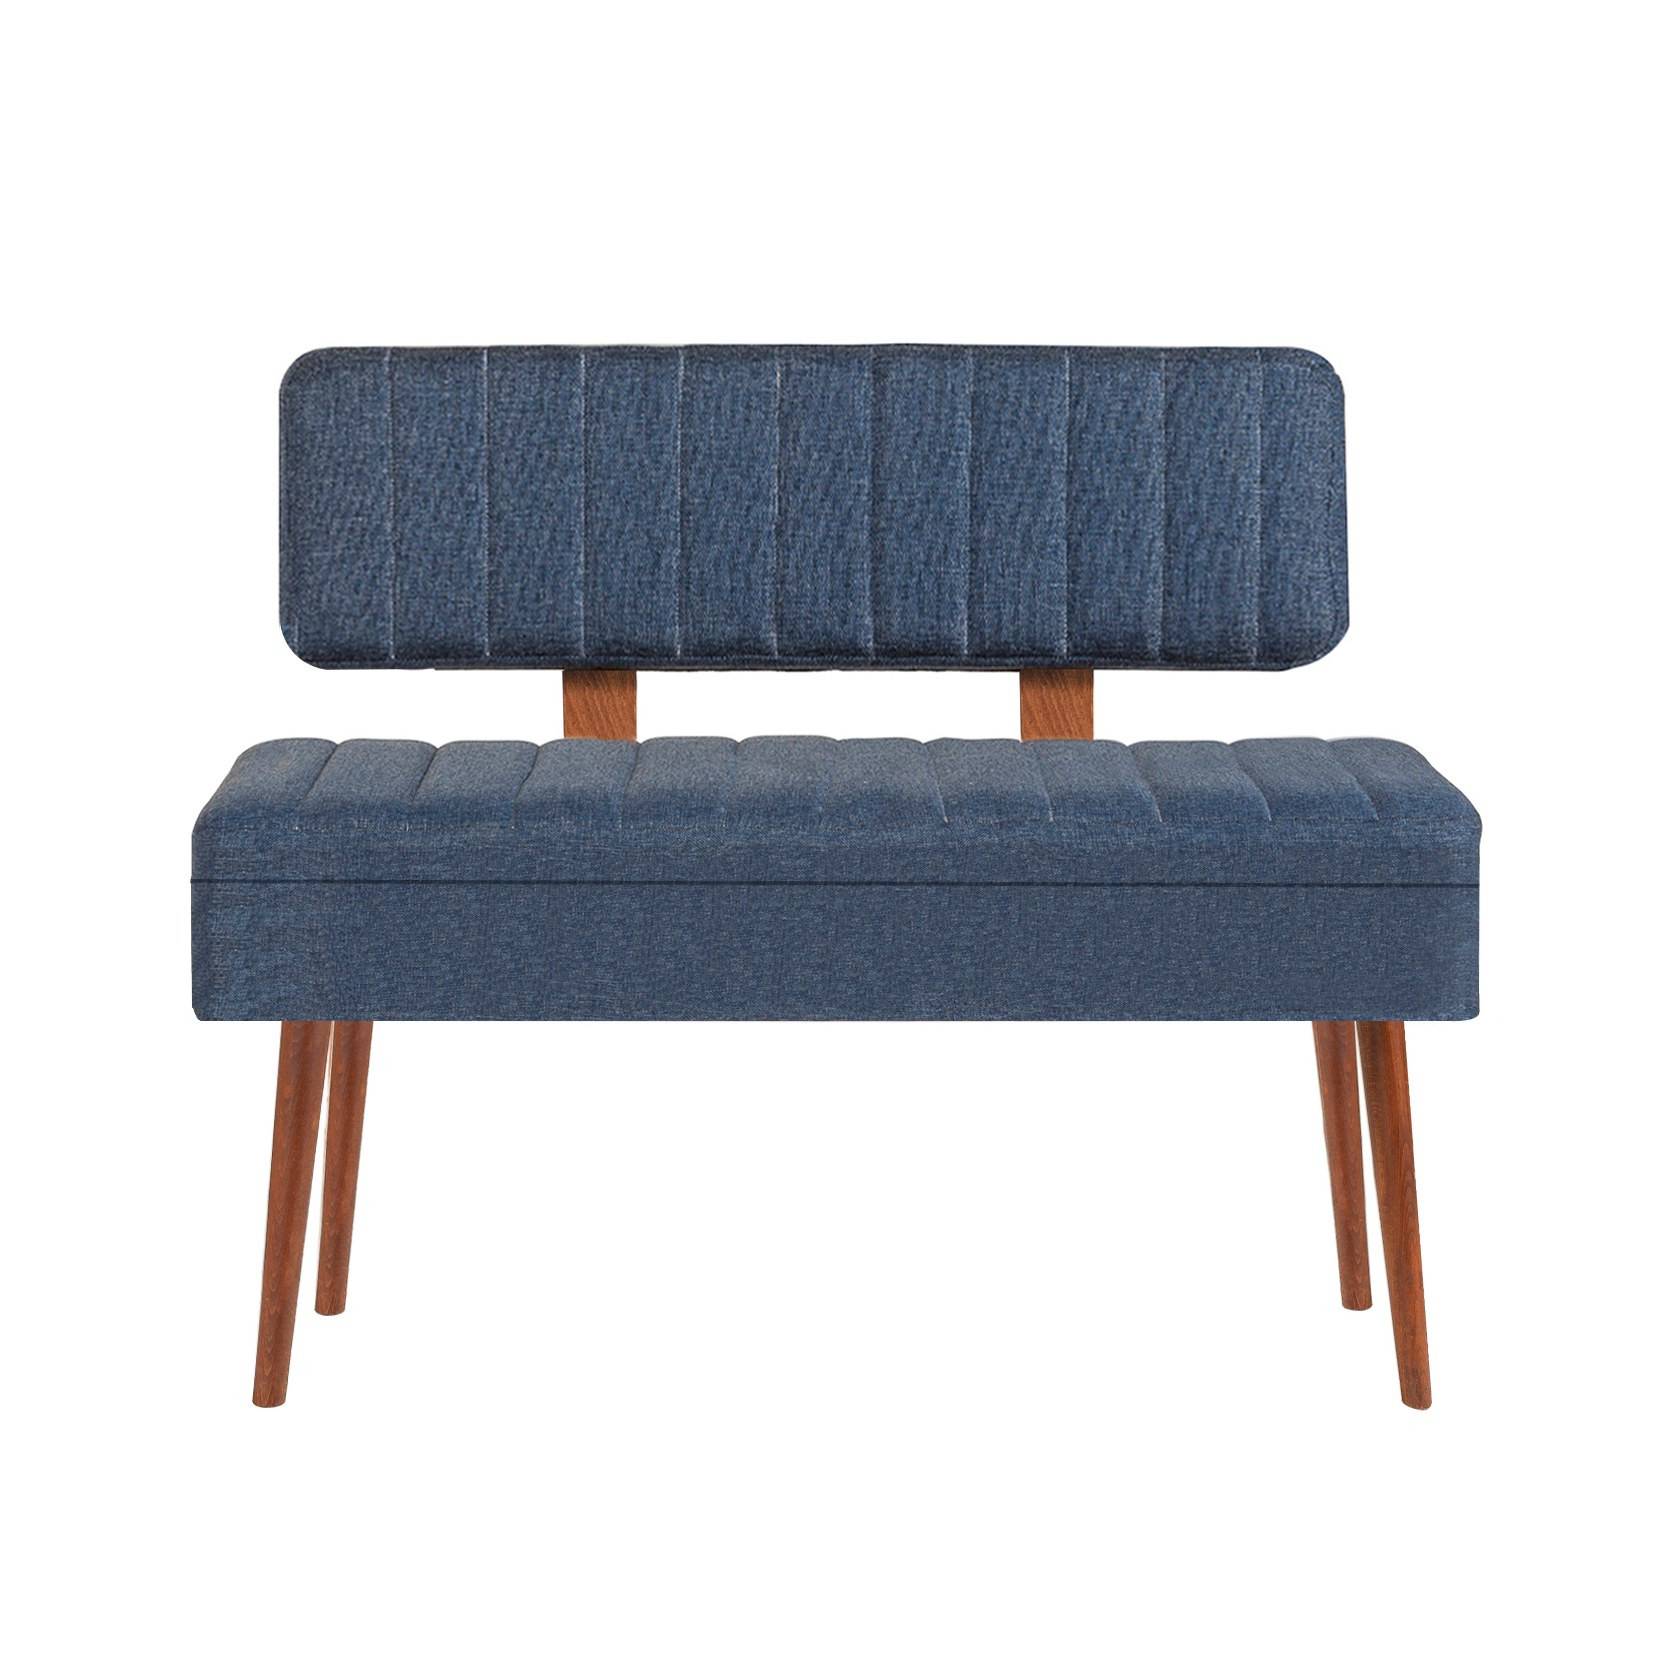 Molva asiento banco tapizado con respaldo L105cm Madera oscura y tela azul oscuro